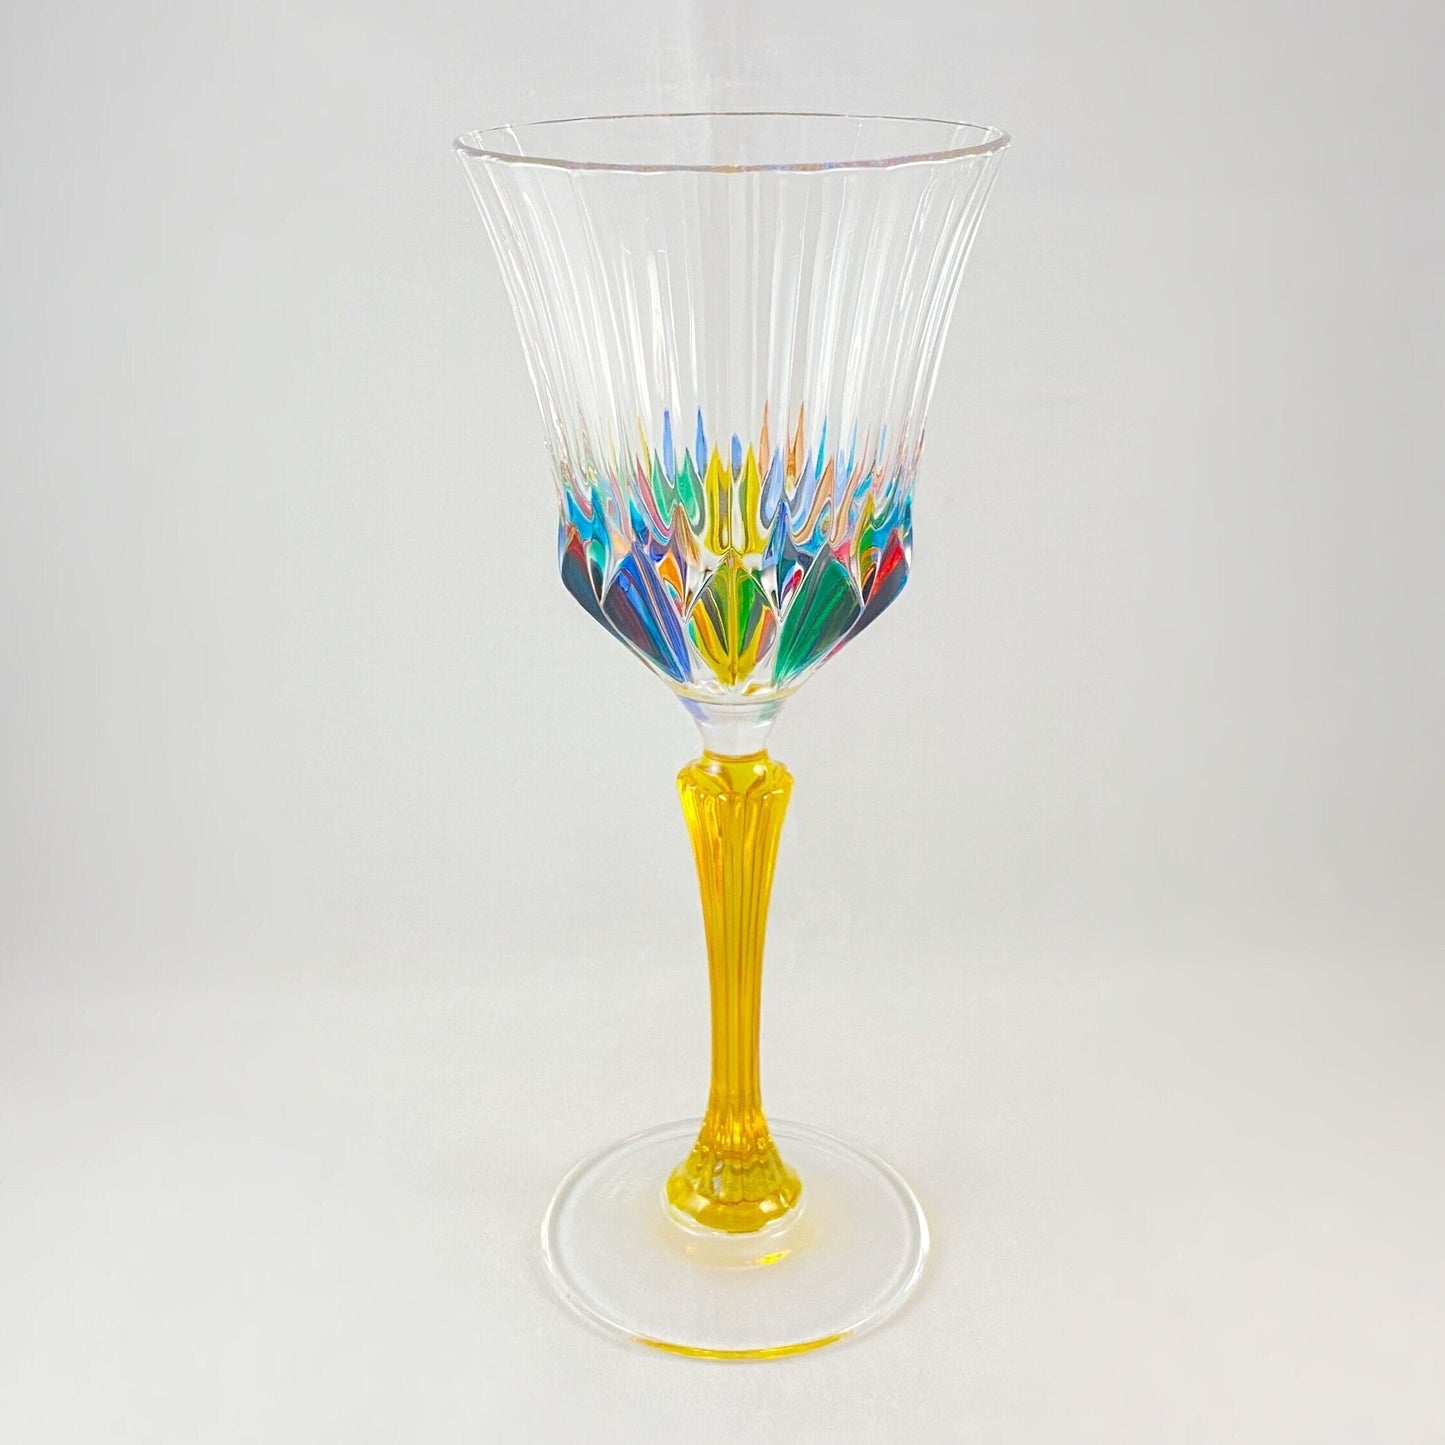 Yellow Stem Venetian Glass Adagio Clarity Wine Glass - Handmade in Italy, Colorful Murano Glass